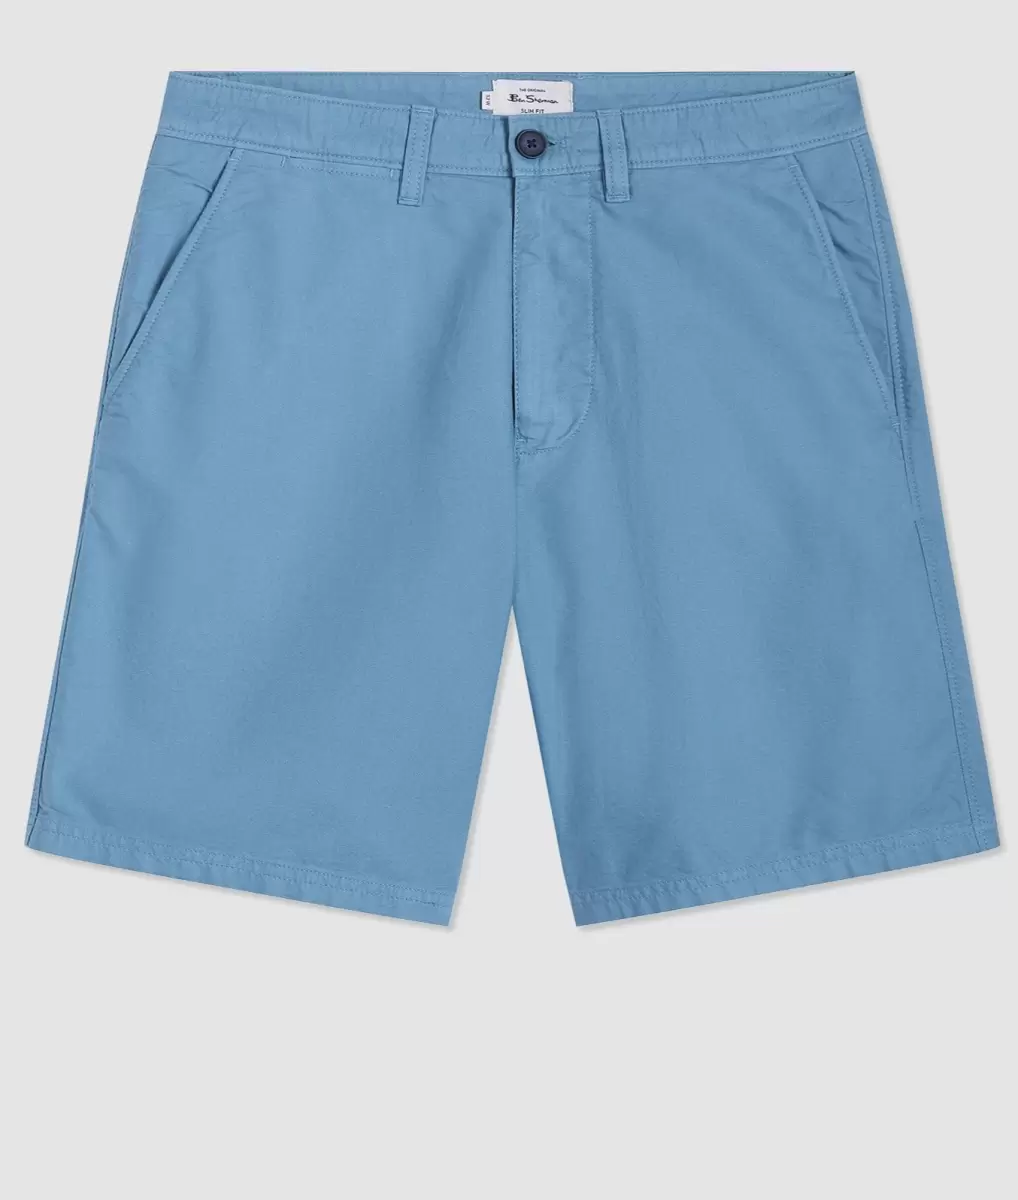 Online Ben Sherman Men Dusty Blue Beatnik Oxford Garment Dye Slim Short - Dusty Blue Shorts